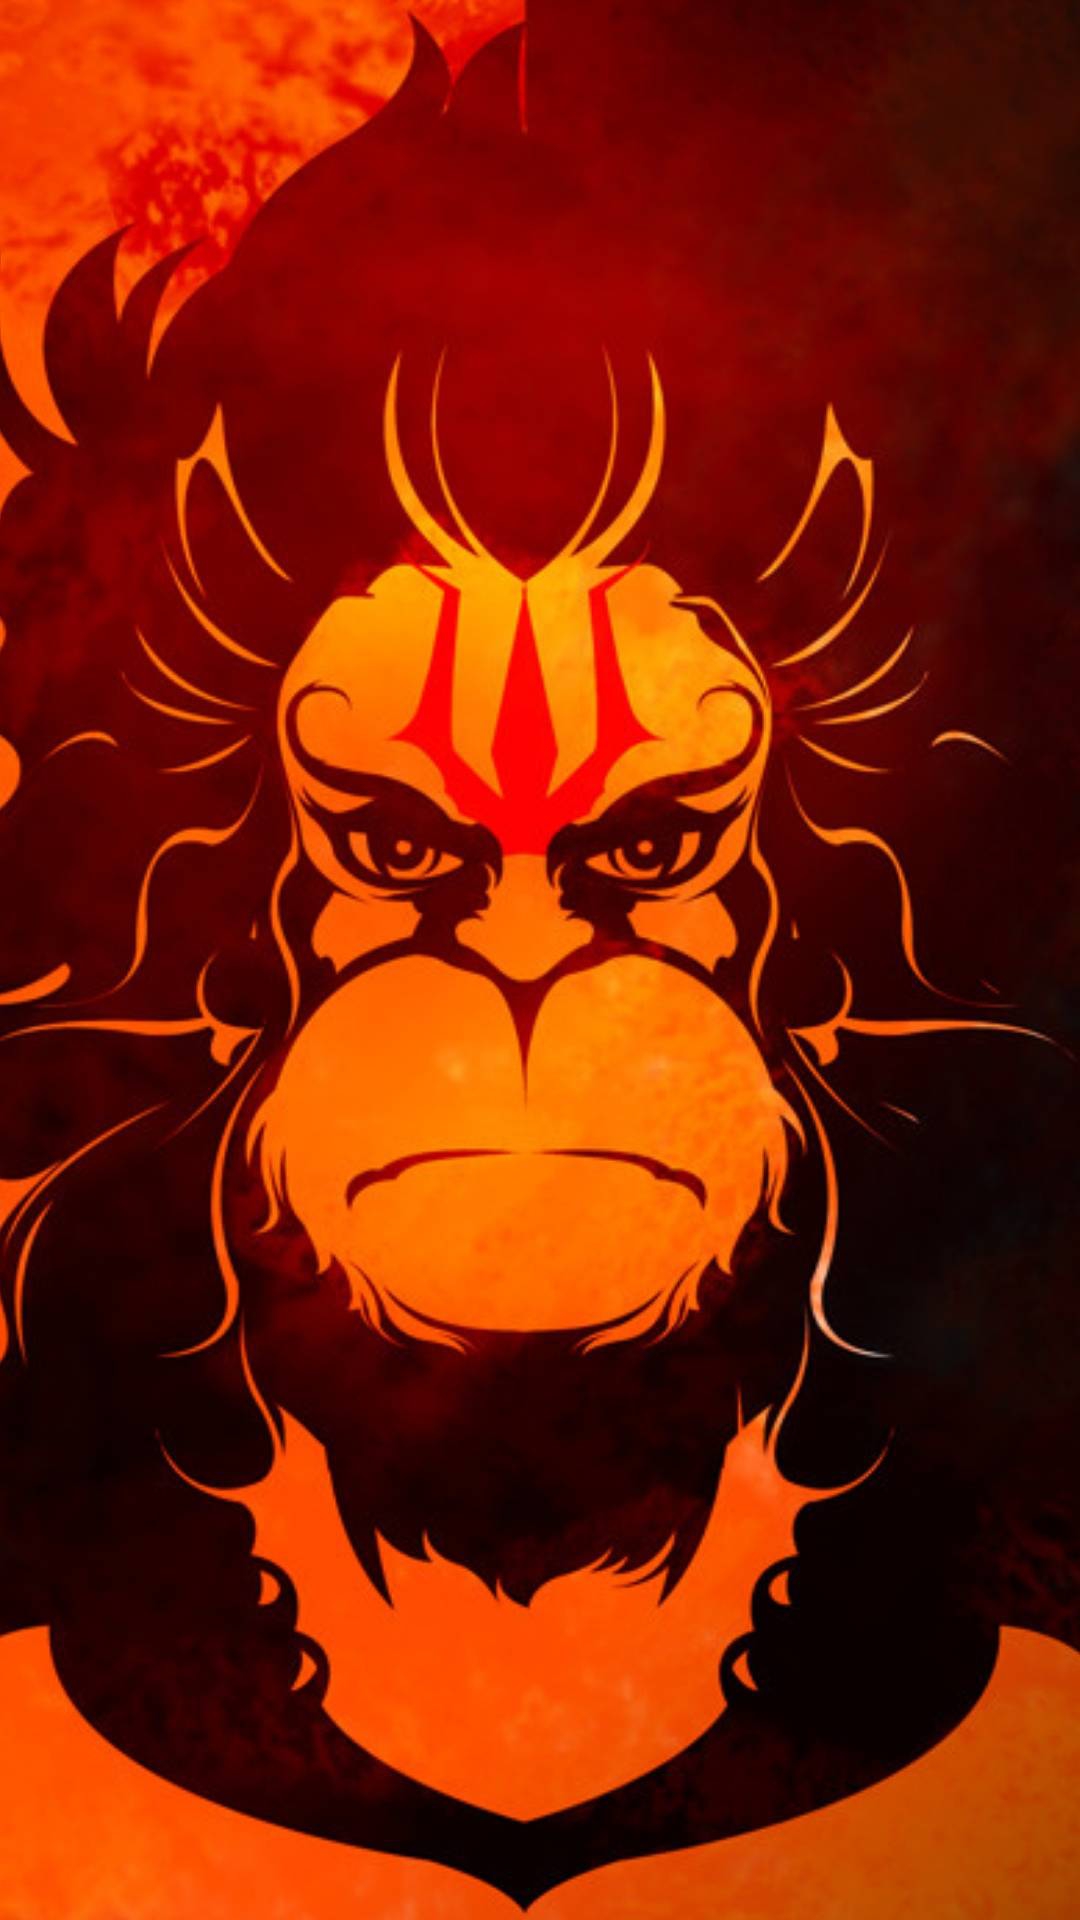 Lord Hanuman iPhone Wallpaper - iPhone Wallpapers